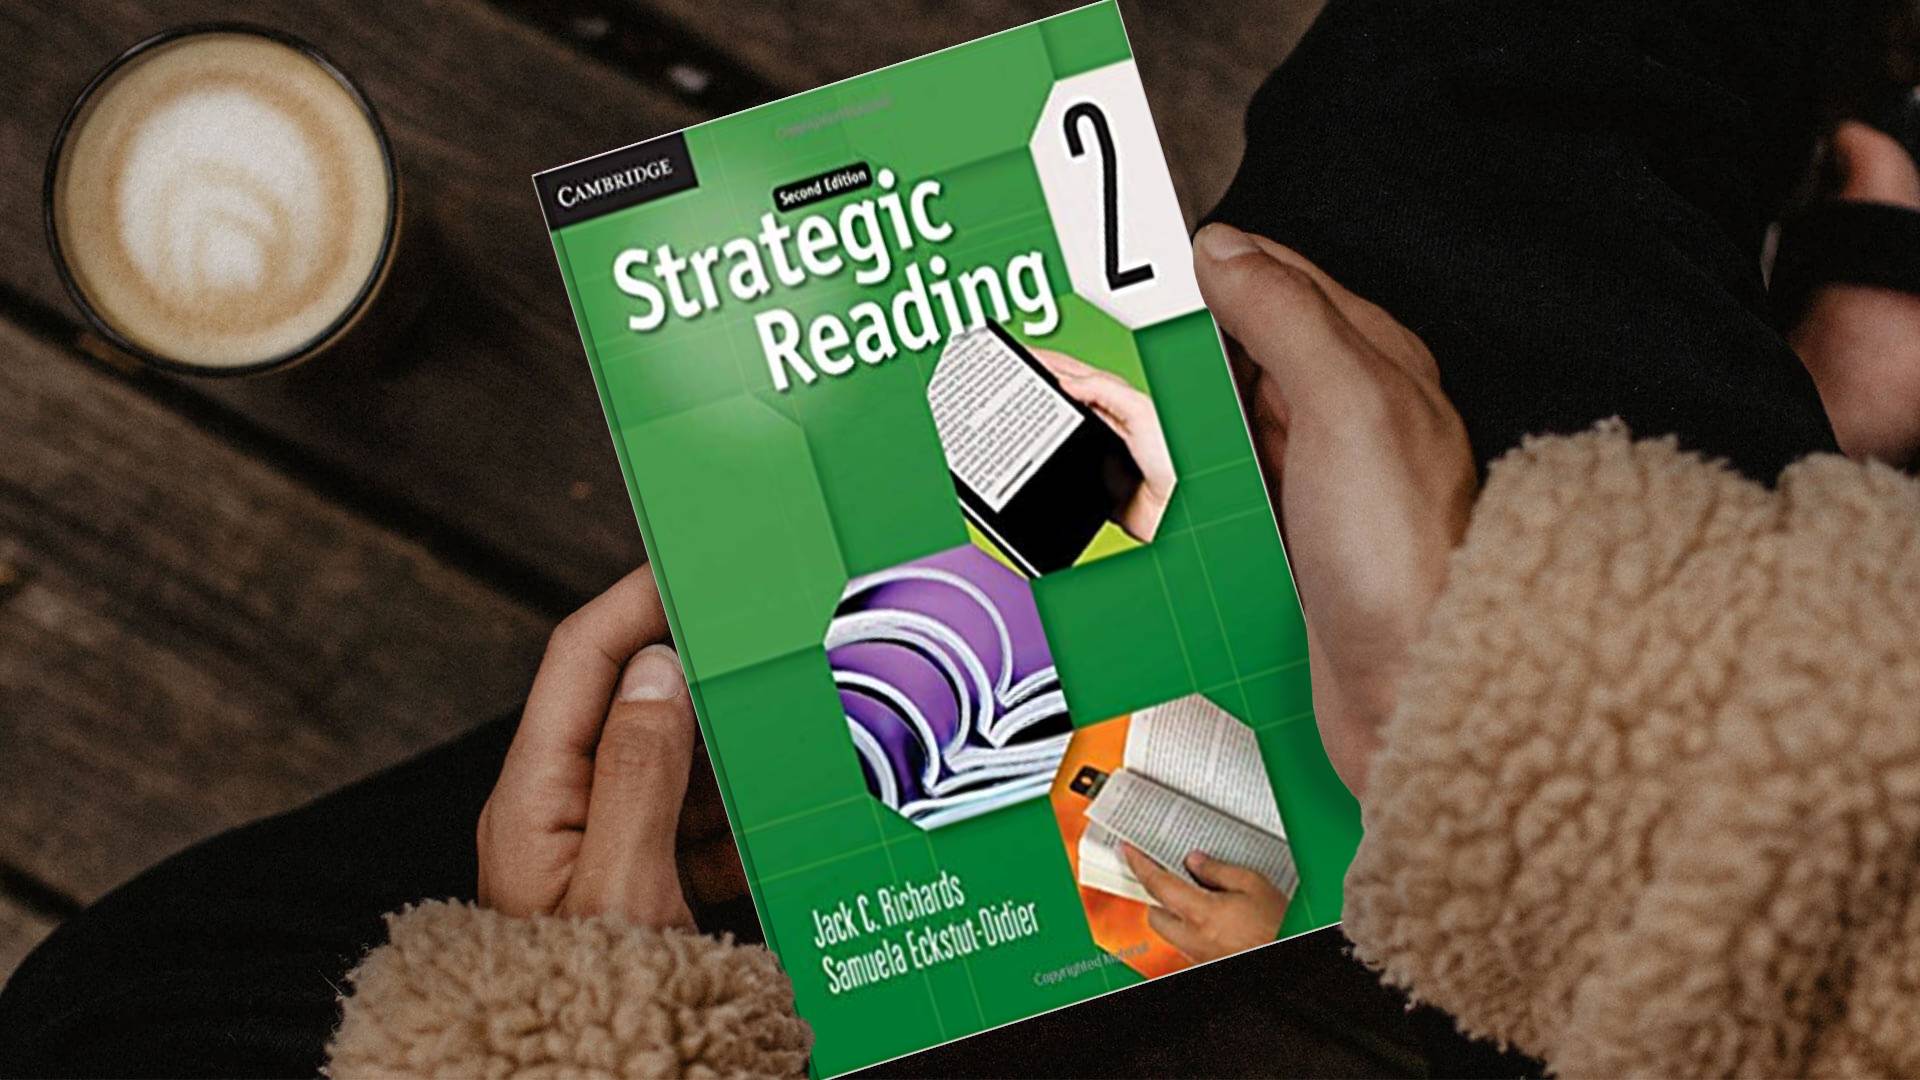 خرید کتاب زبان انگلیسی | کتاب استراتژیک ریدینگ دو ویرایش دوم | خرید کتاب Strategic Reading 2 Second Edition